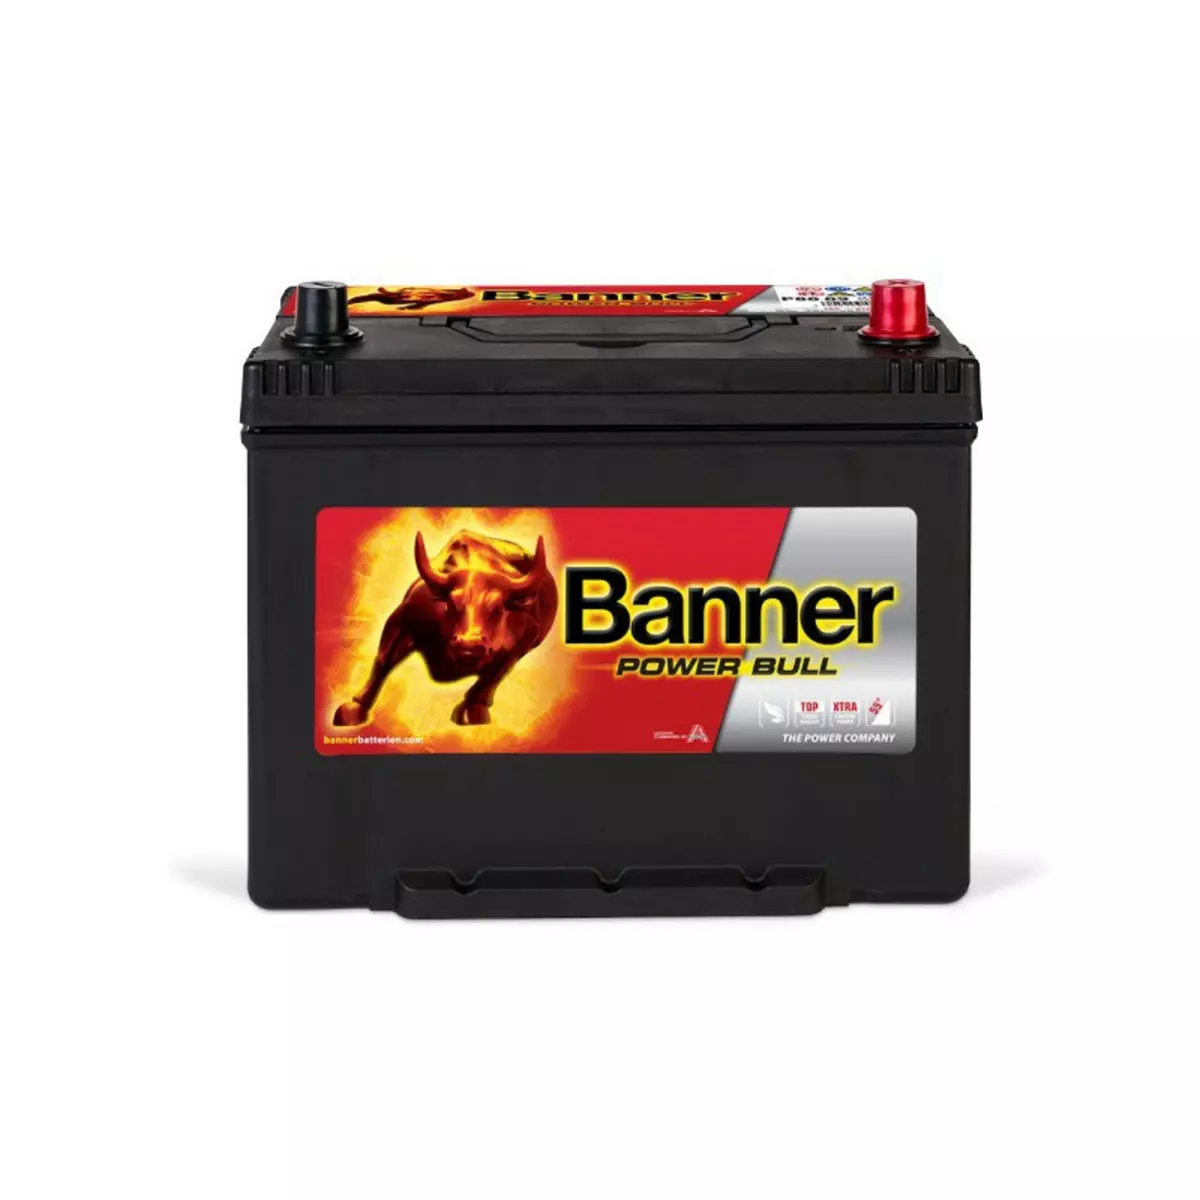 BANNER Banner Power Bull P8009 12v 80AH 640A